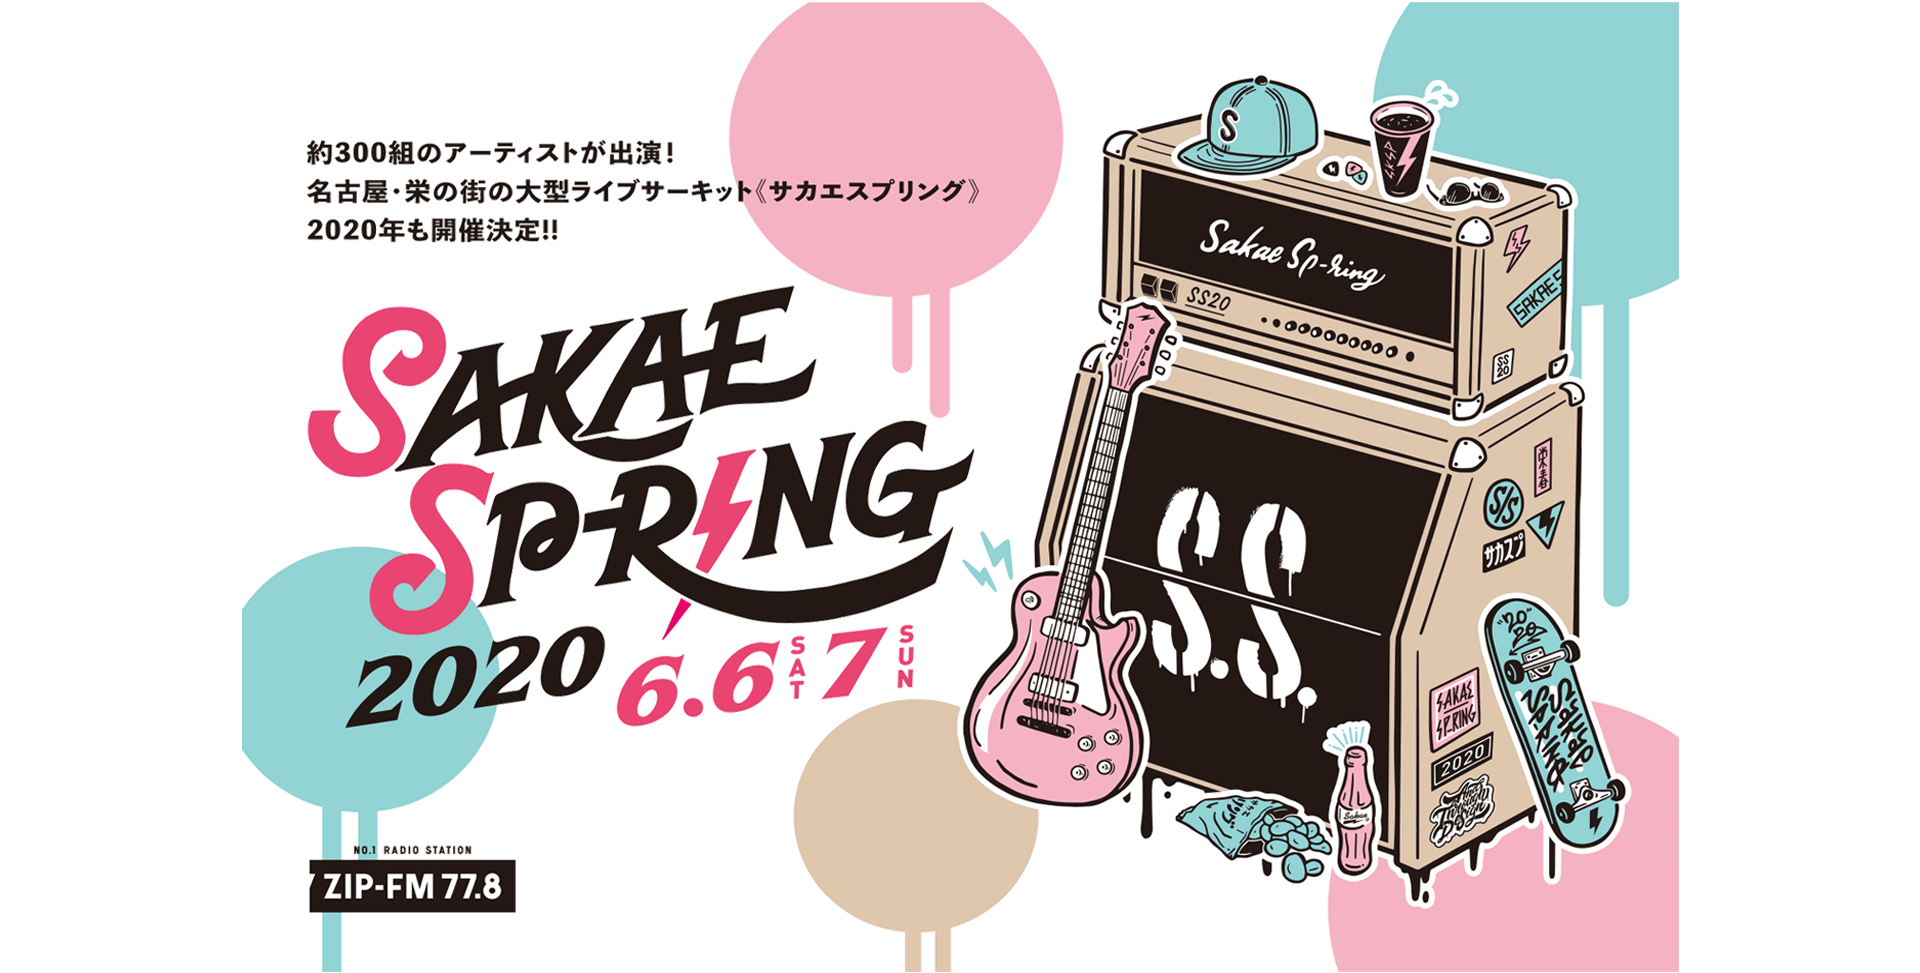 Sakae Sp Ring 2020 サカエスプリング2020